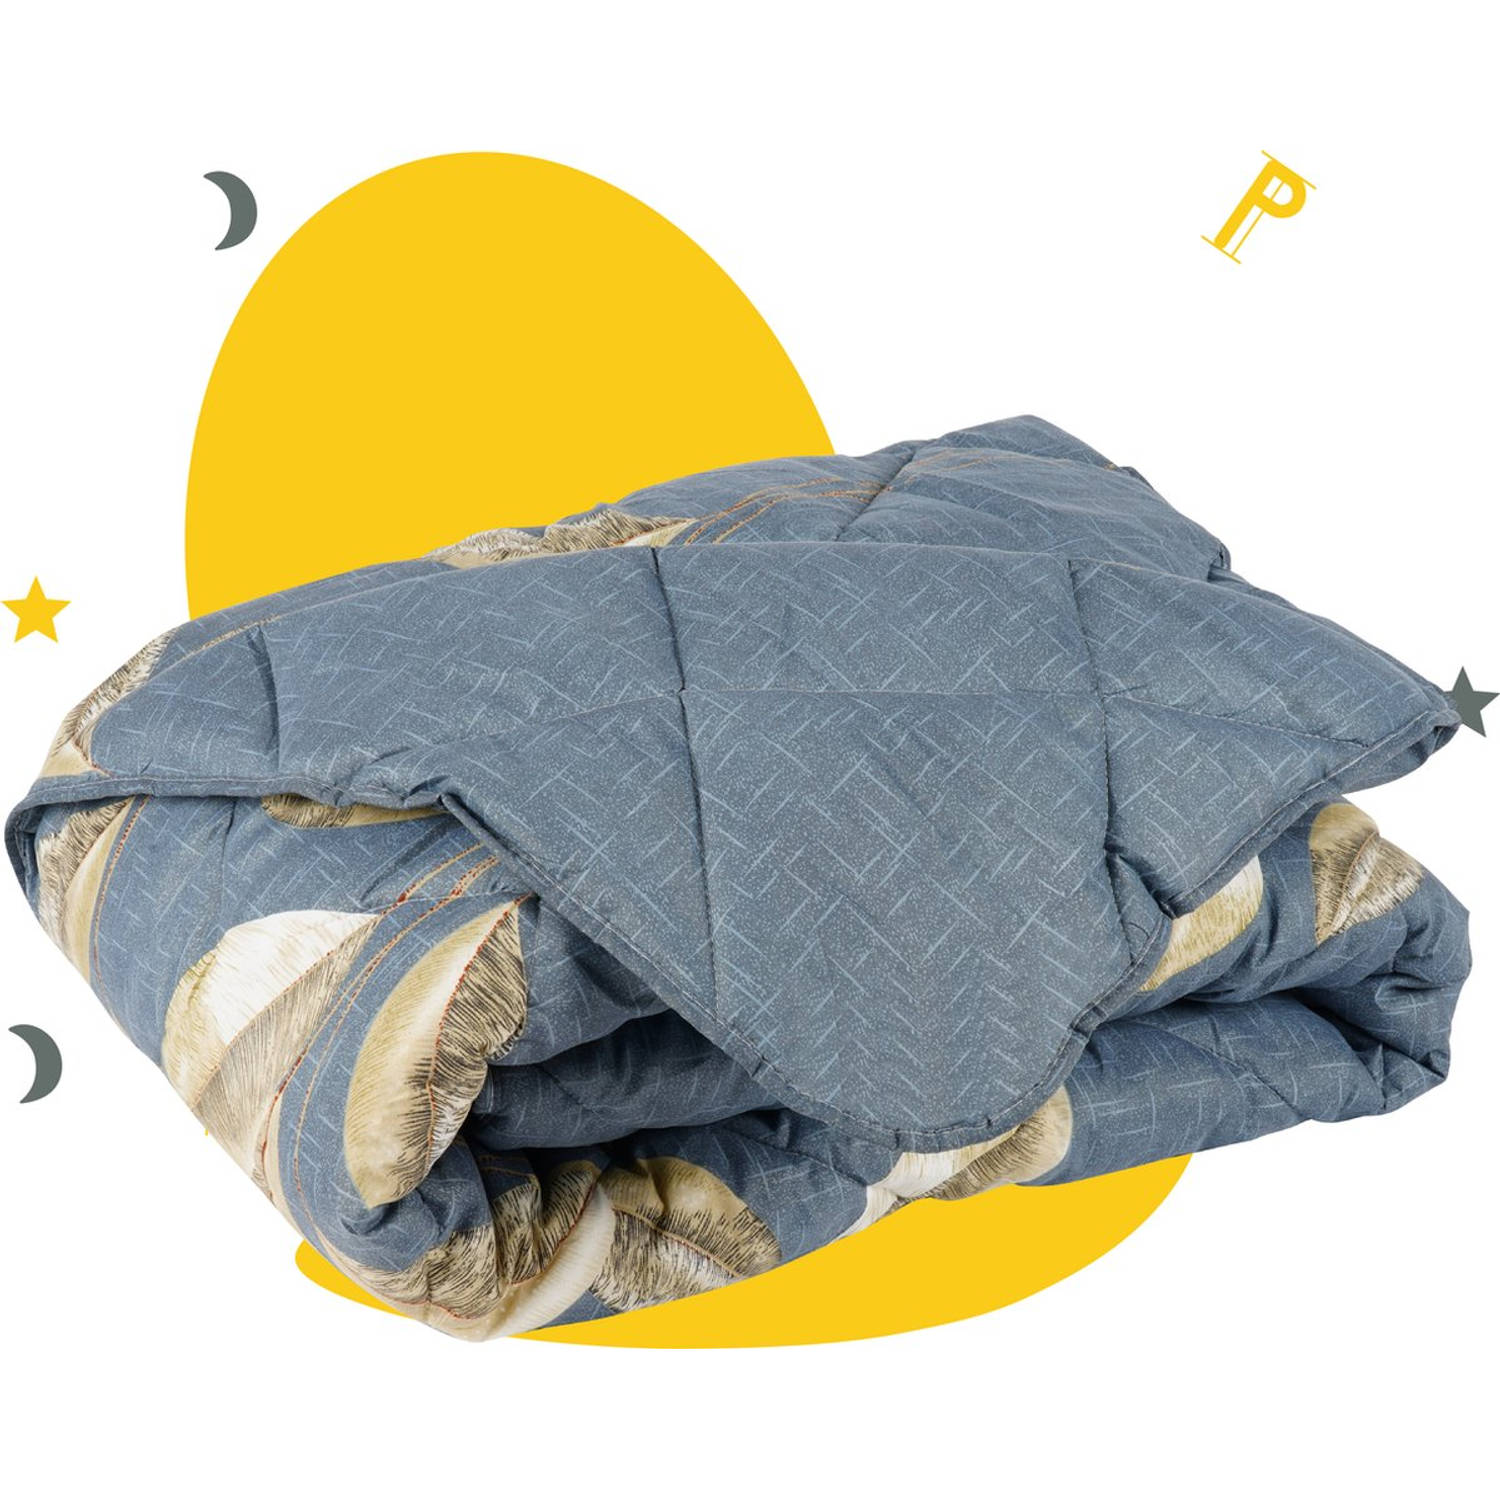 Sleep Comfy - Marigold - All Year Dekbed Enkel 140x200 cm -Dekbed zonder overtrek -Gekleurd dekbed -Eenpersoons Dekbed